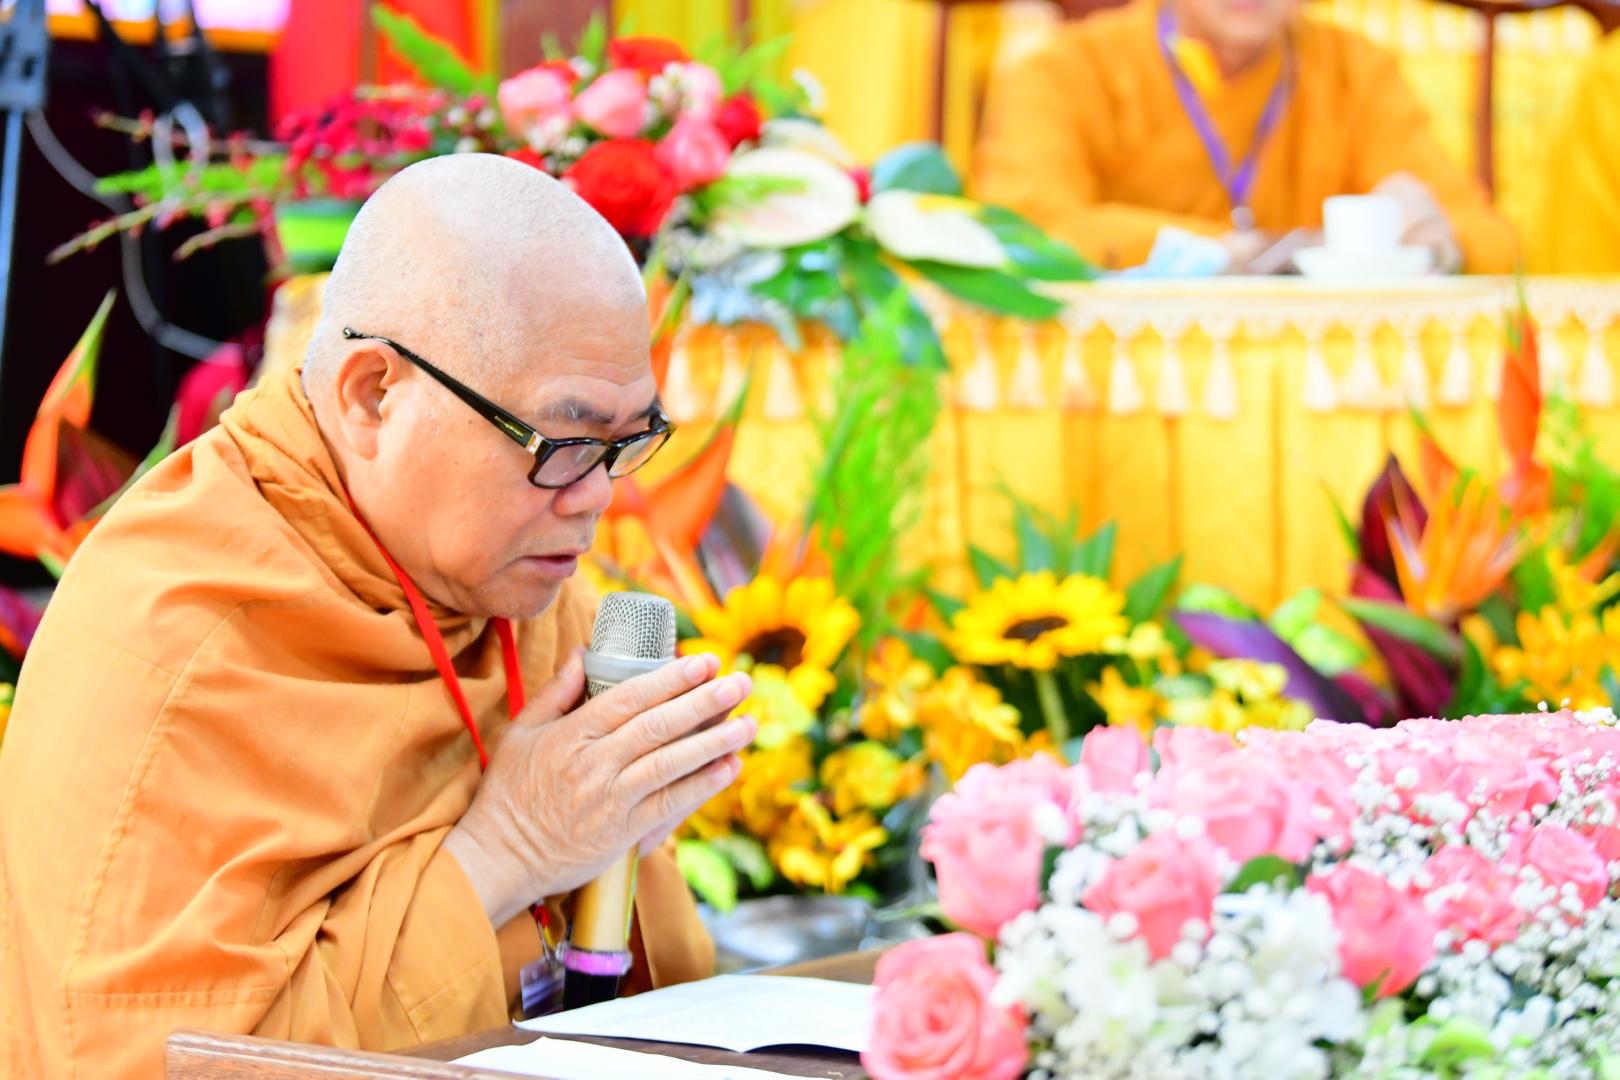 Viện Nghiên cứu Phật học Việt Nam ra mắt nhân sự nhiệm kỳ 2022 - 2027